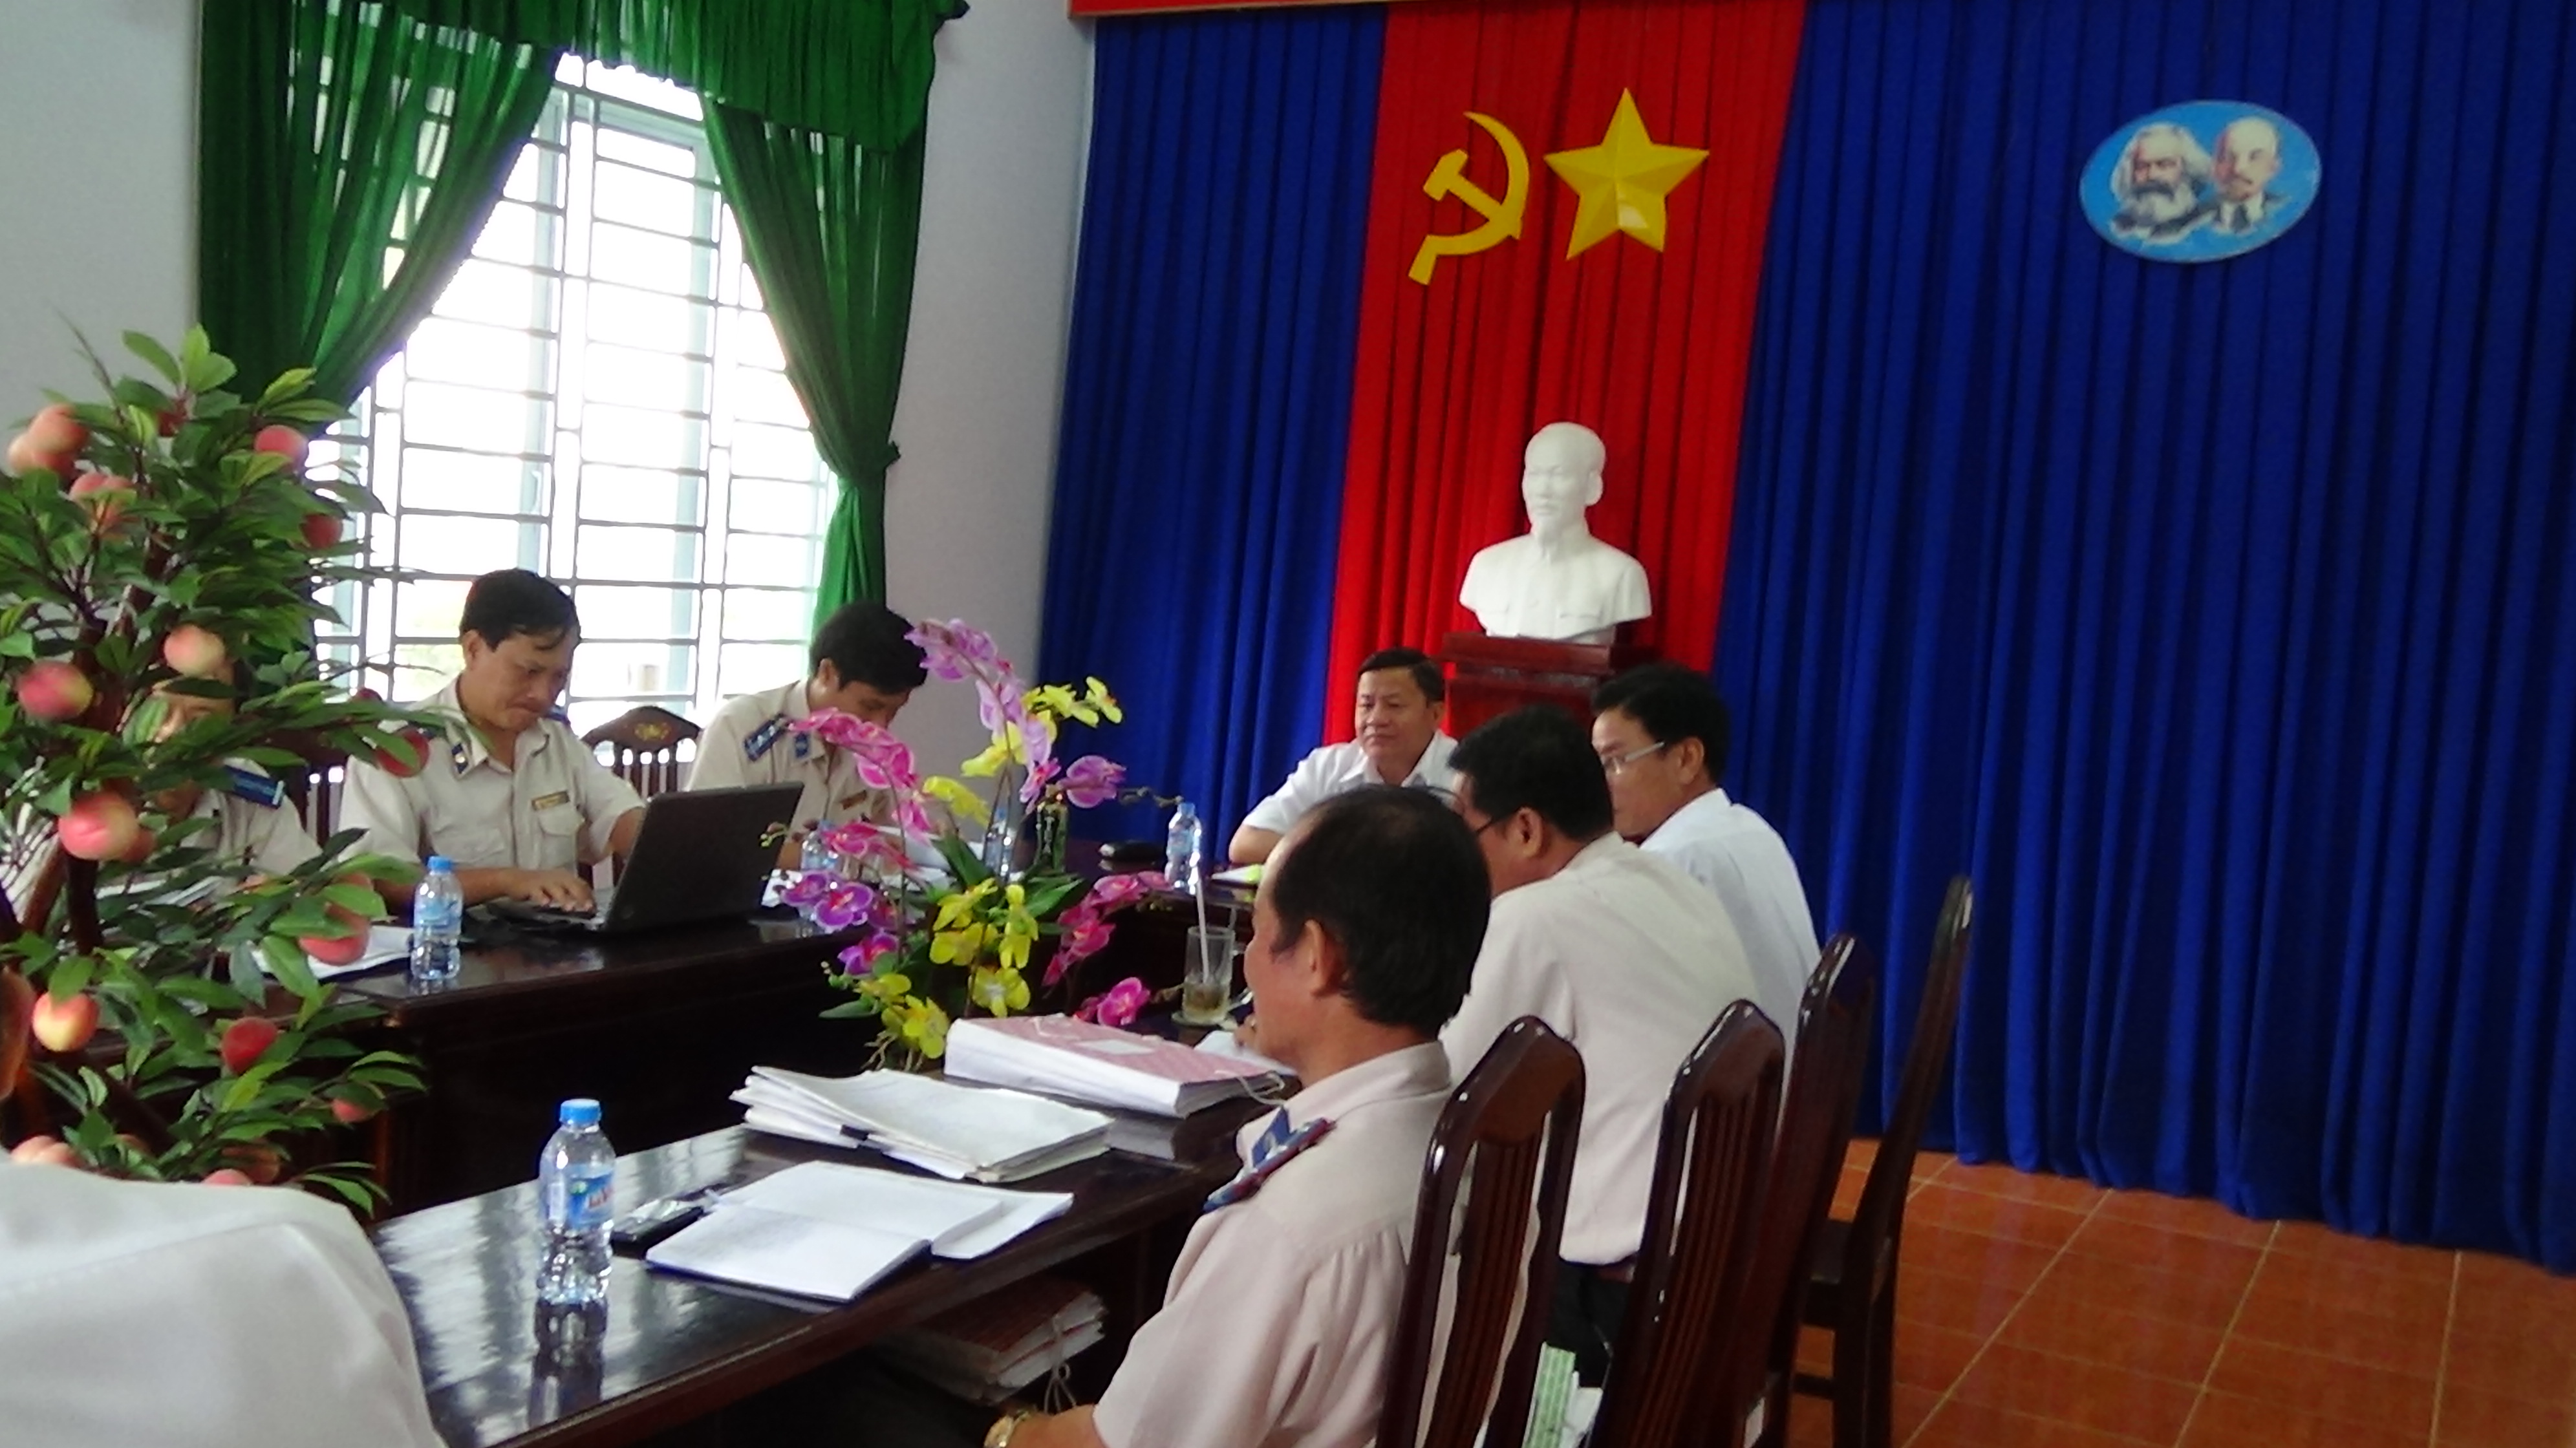 Cục trưởng Cục Thi hành án dân sự kiểm tra công tác thi hành án dân sự tháng 7 năm 2016 theo niên độ thi hành án dân sự tại Chi cục Thi hành án dân sự huyện Thủ Thừa